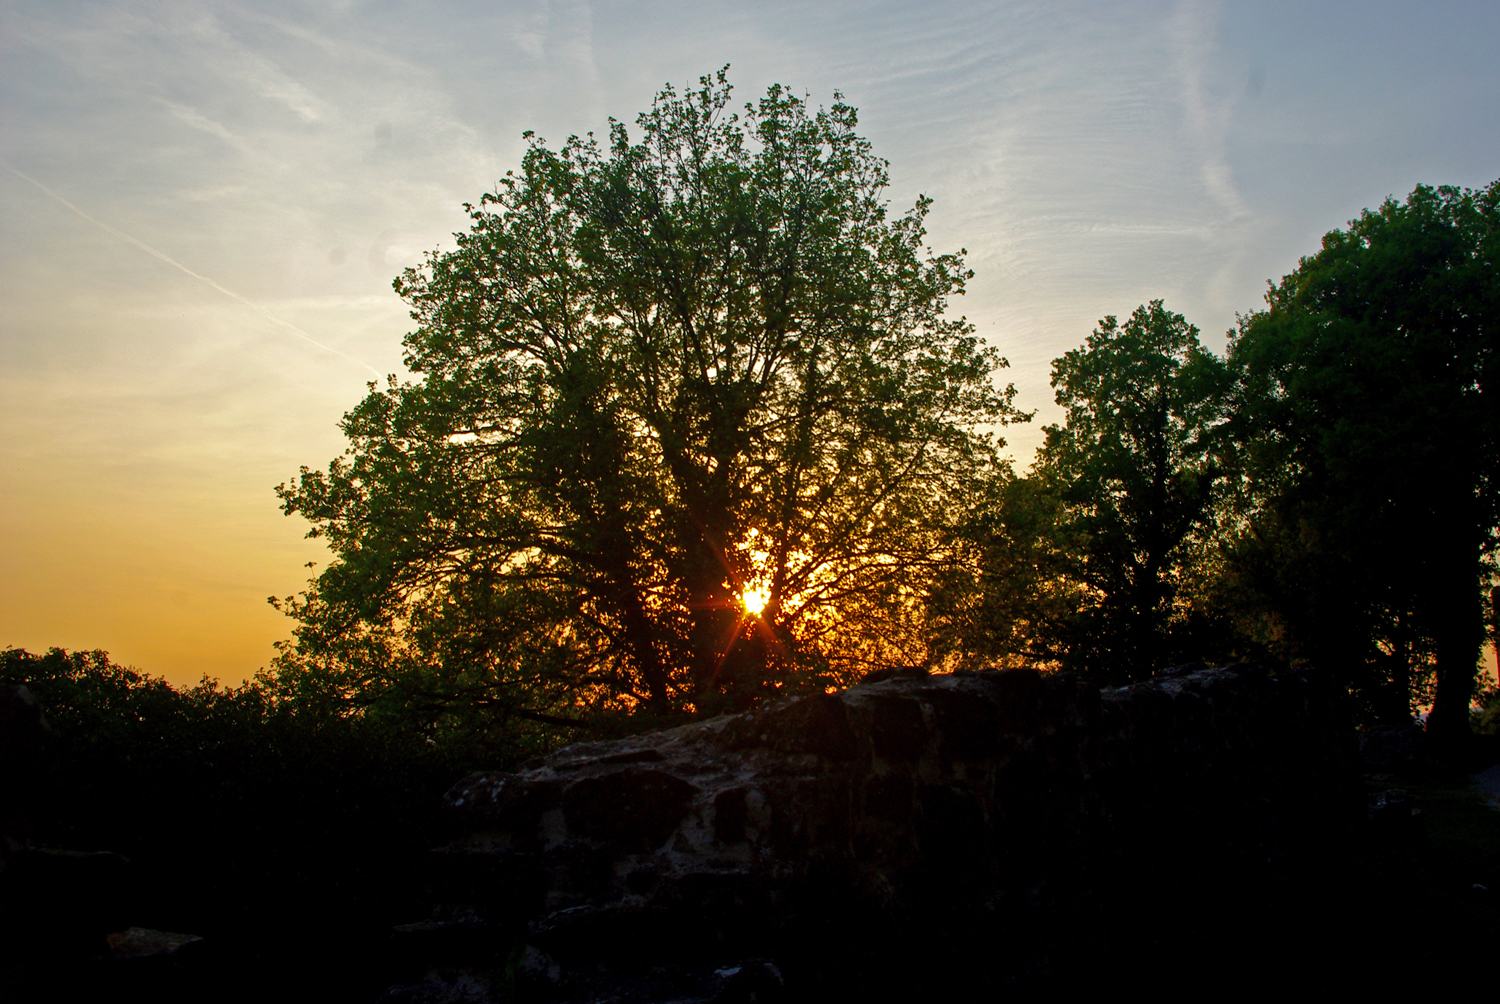 Sonnenuntergang mit Baum